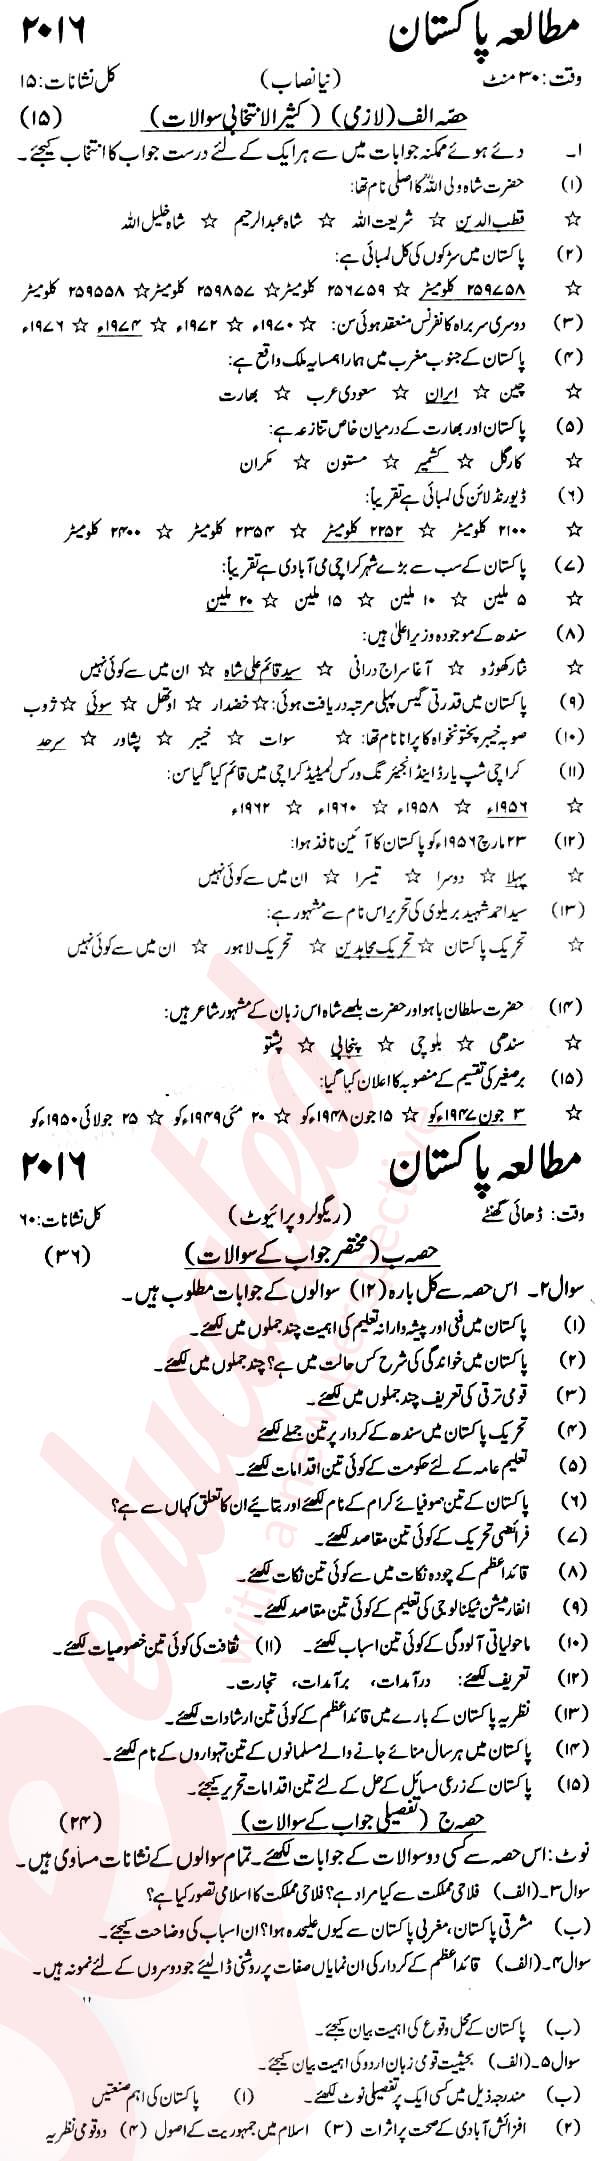 Pak Studies 9th Urdu Medium Past Paper Group 1 KPBTE 2016